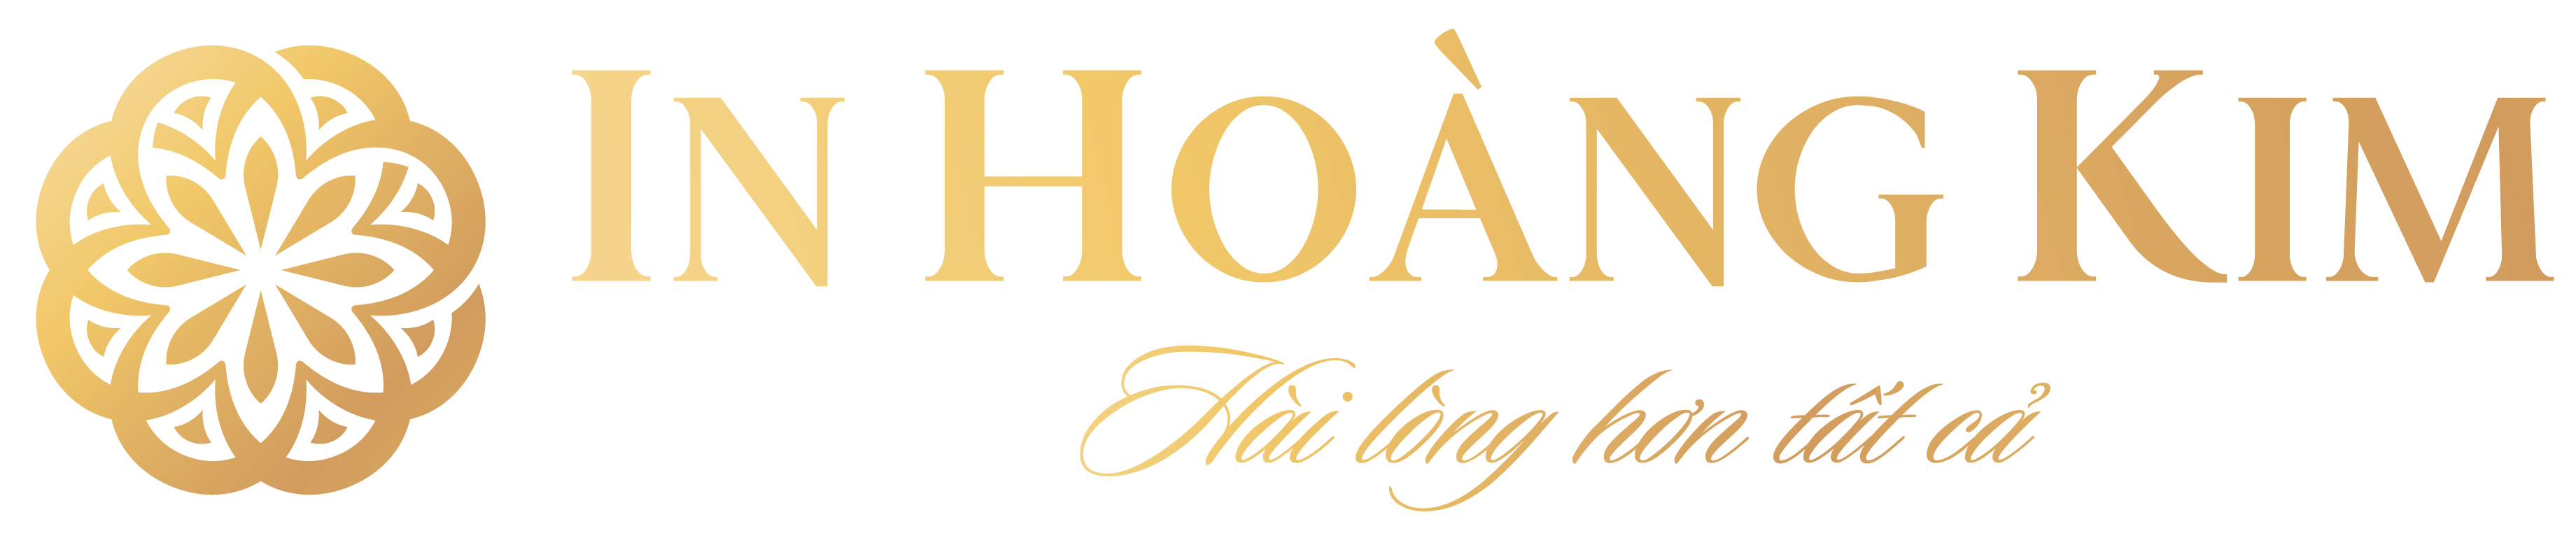 Logo inhoangkim 02